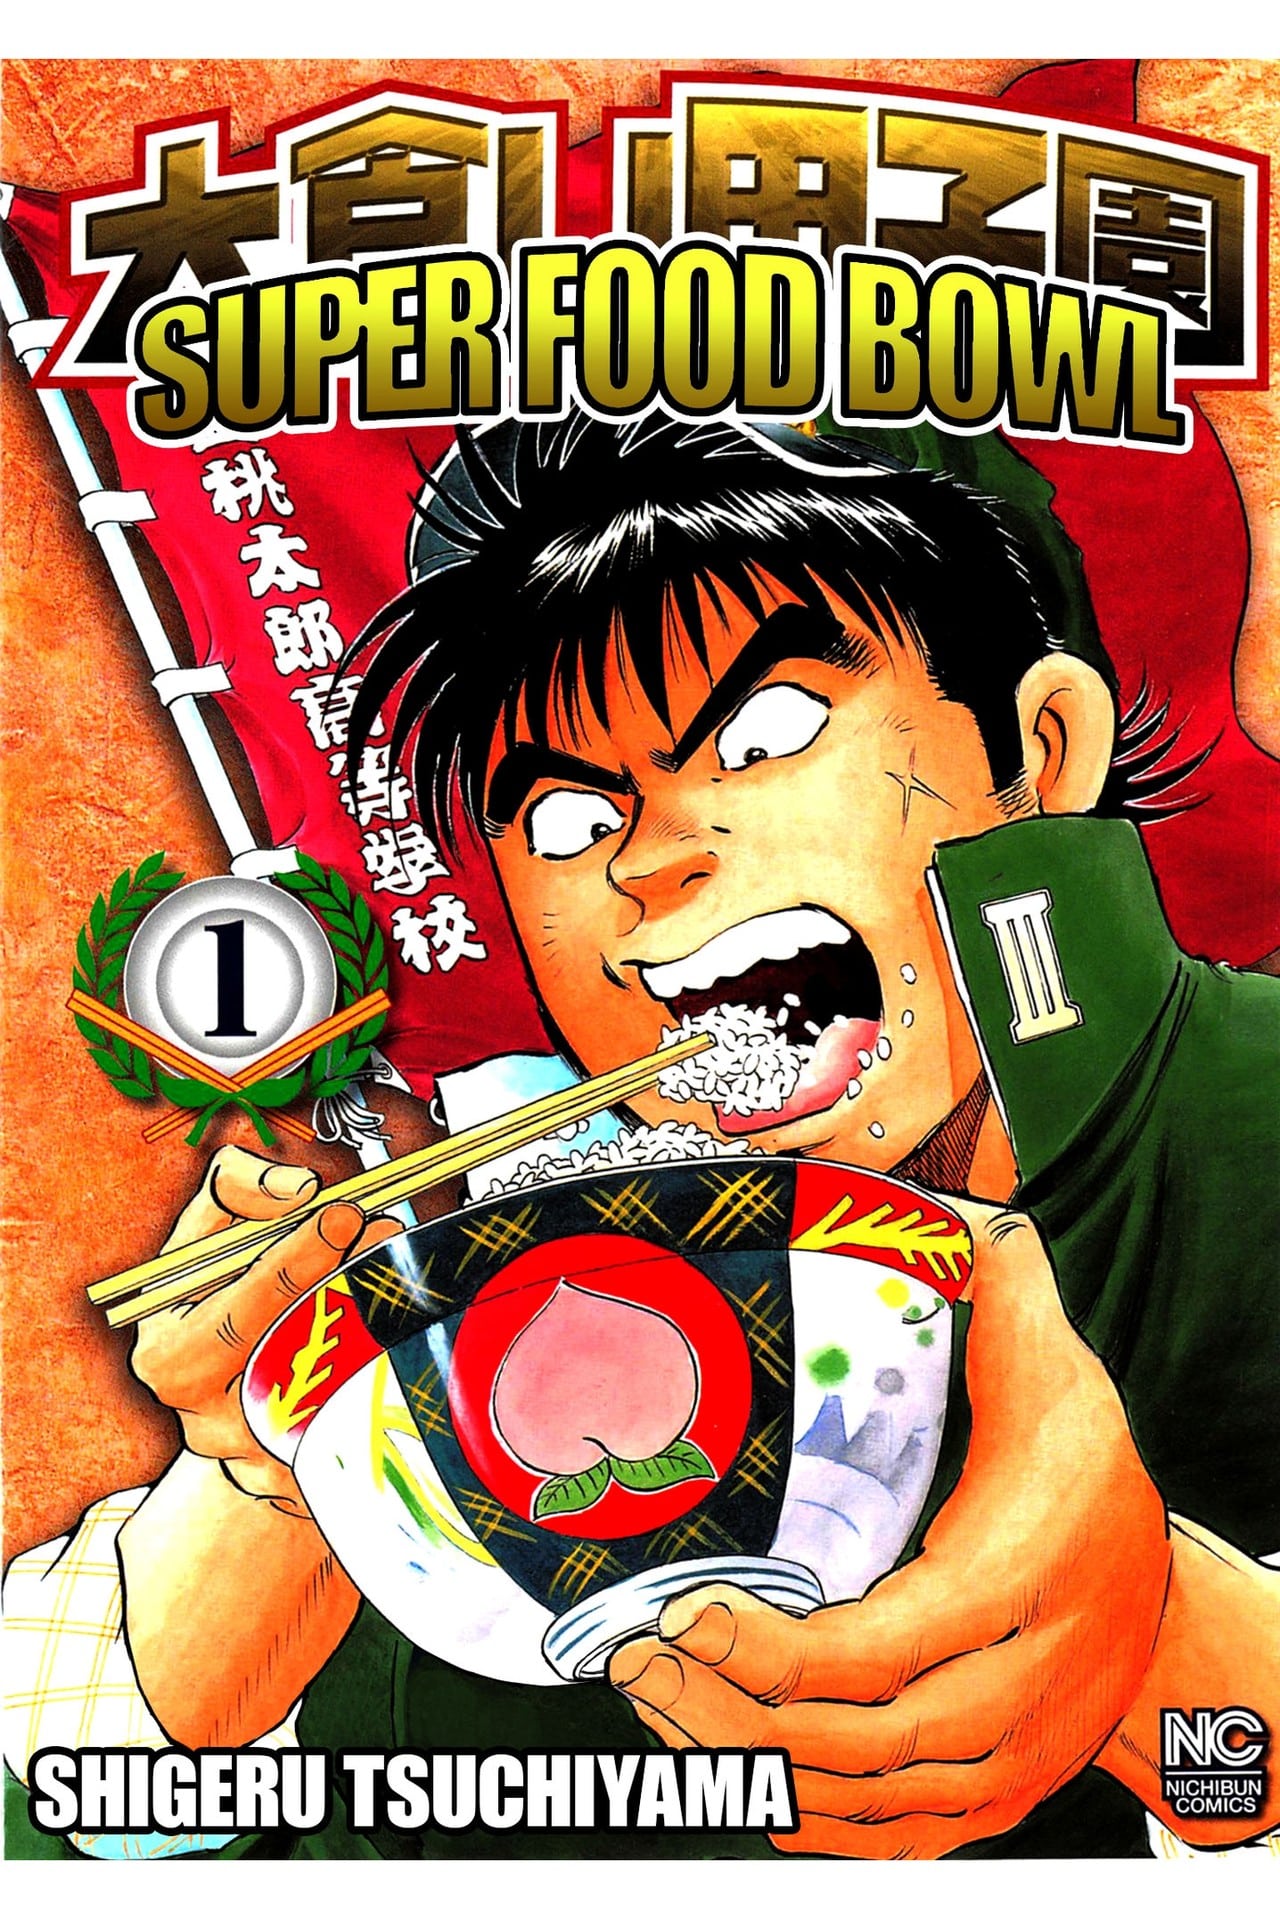 Super Food Bowl by Shigeru Tsuchiyama